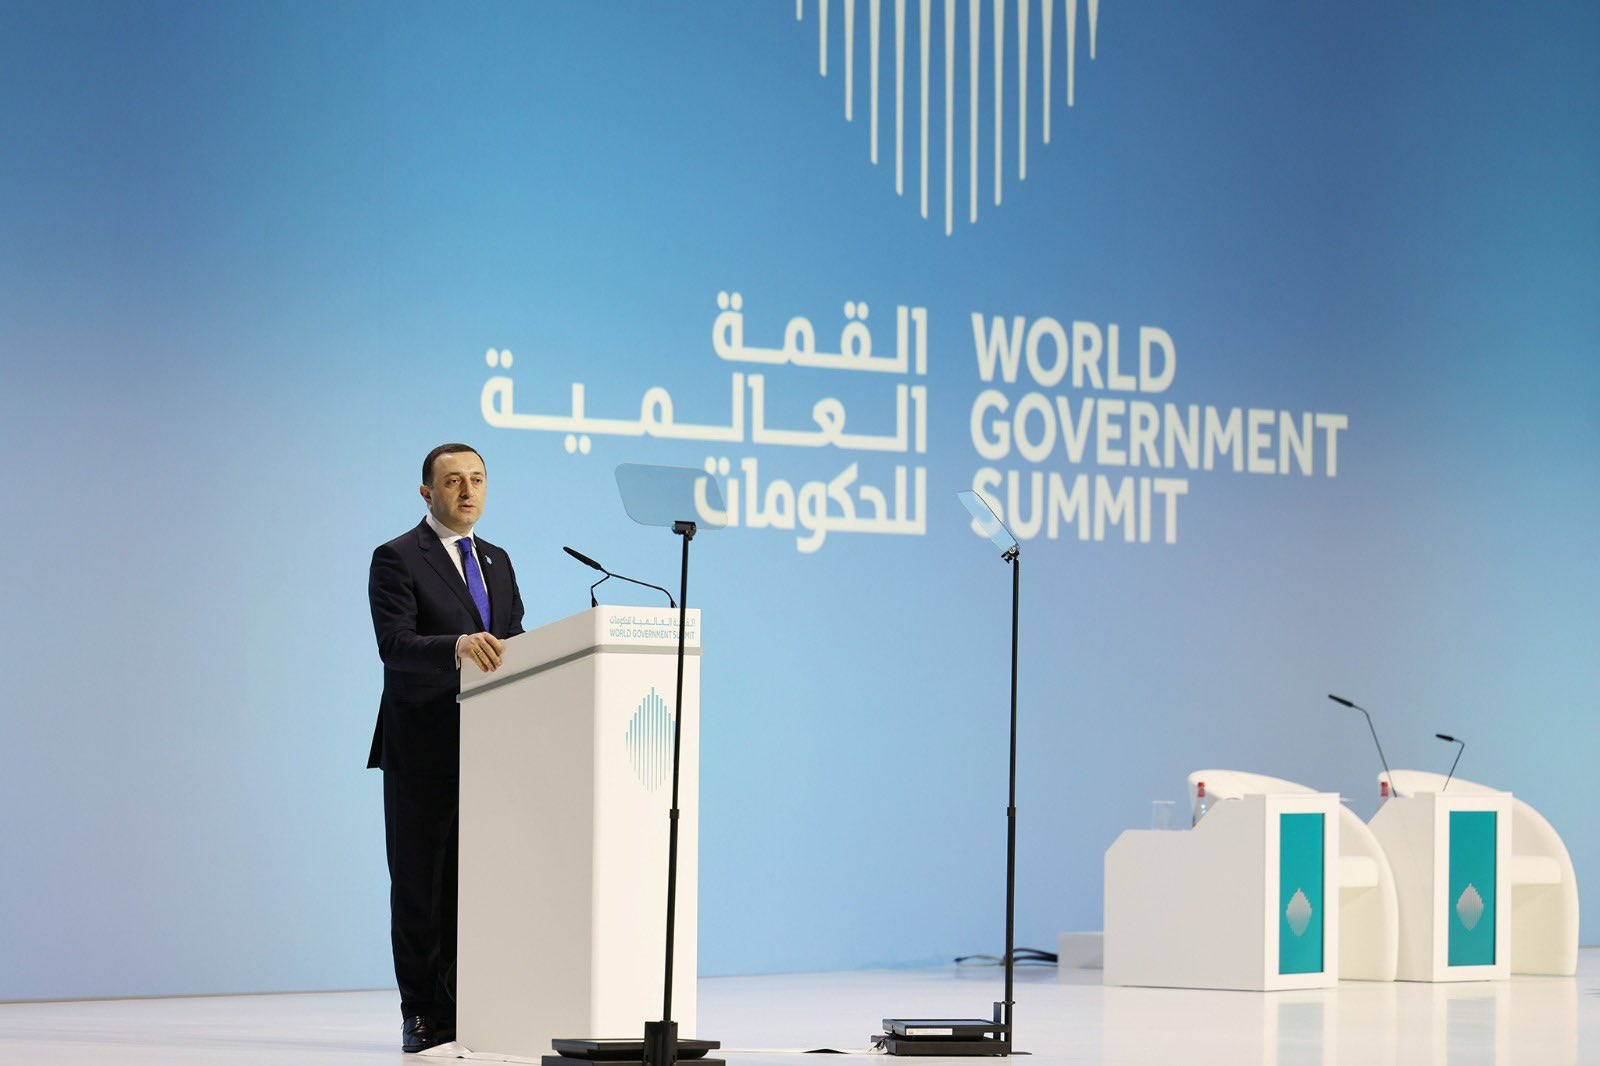 Правительство Грузии. World government Summit. Всемирном правительственном саммите в Дубае. World government Summit Dubai location. Саммит правительства